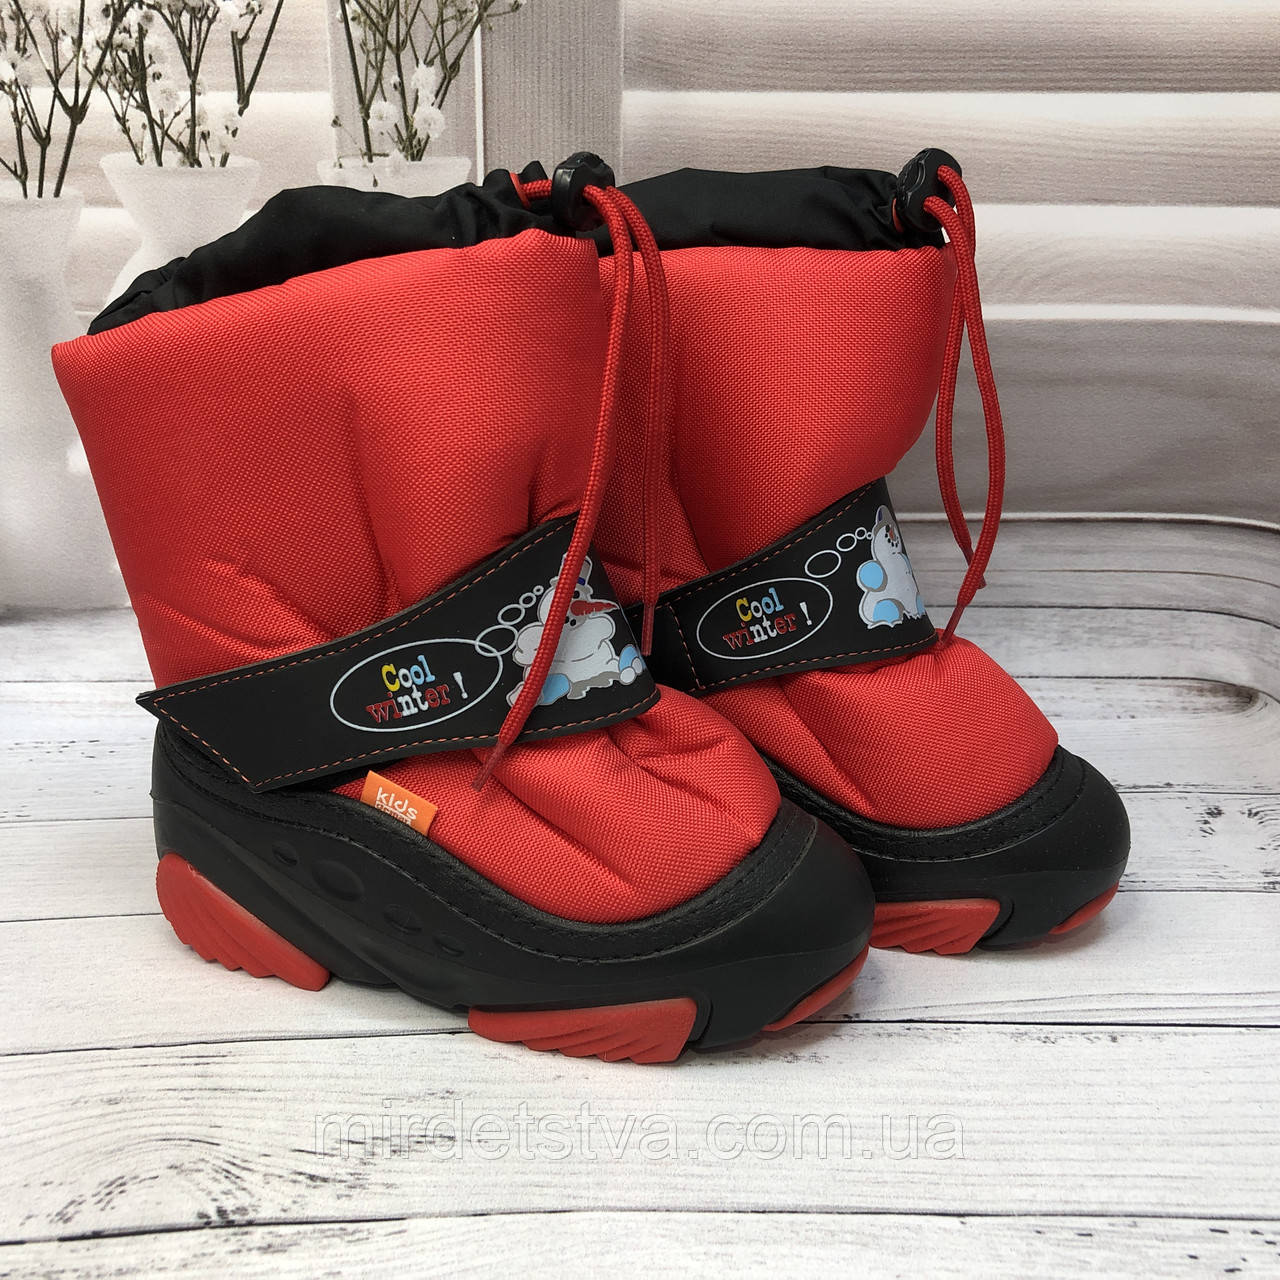 Дитячі зимові чоботи дутики Demar Snowman червоні розмір 20-21